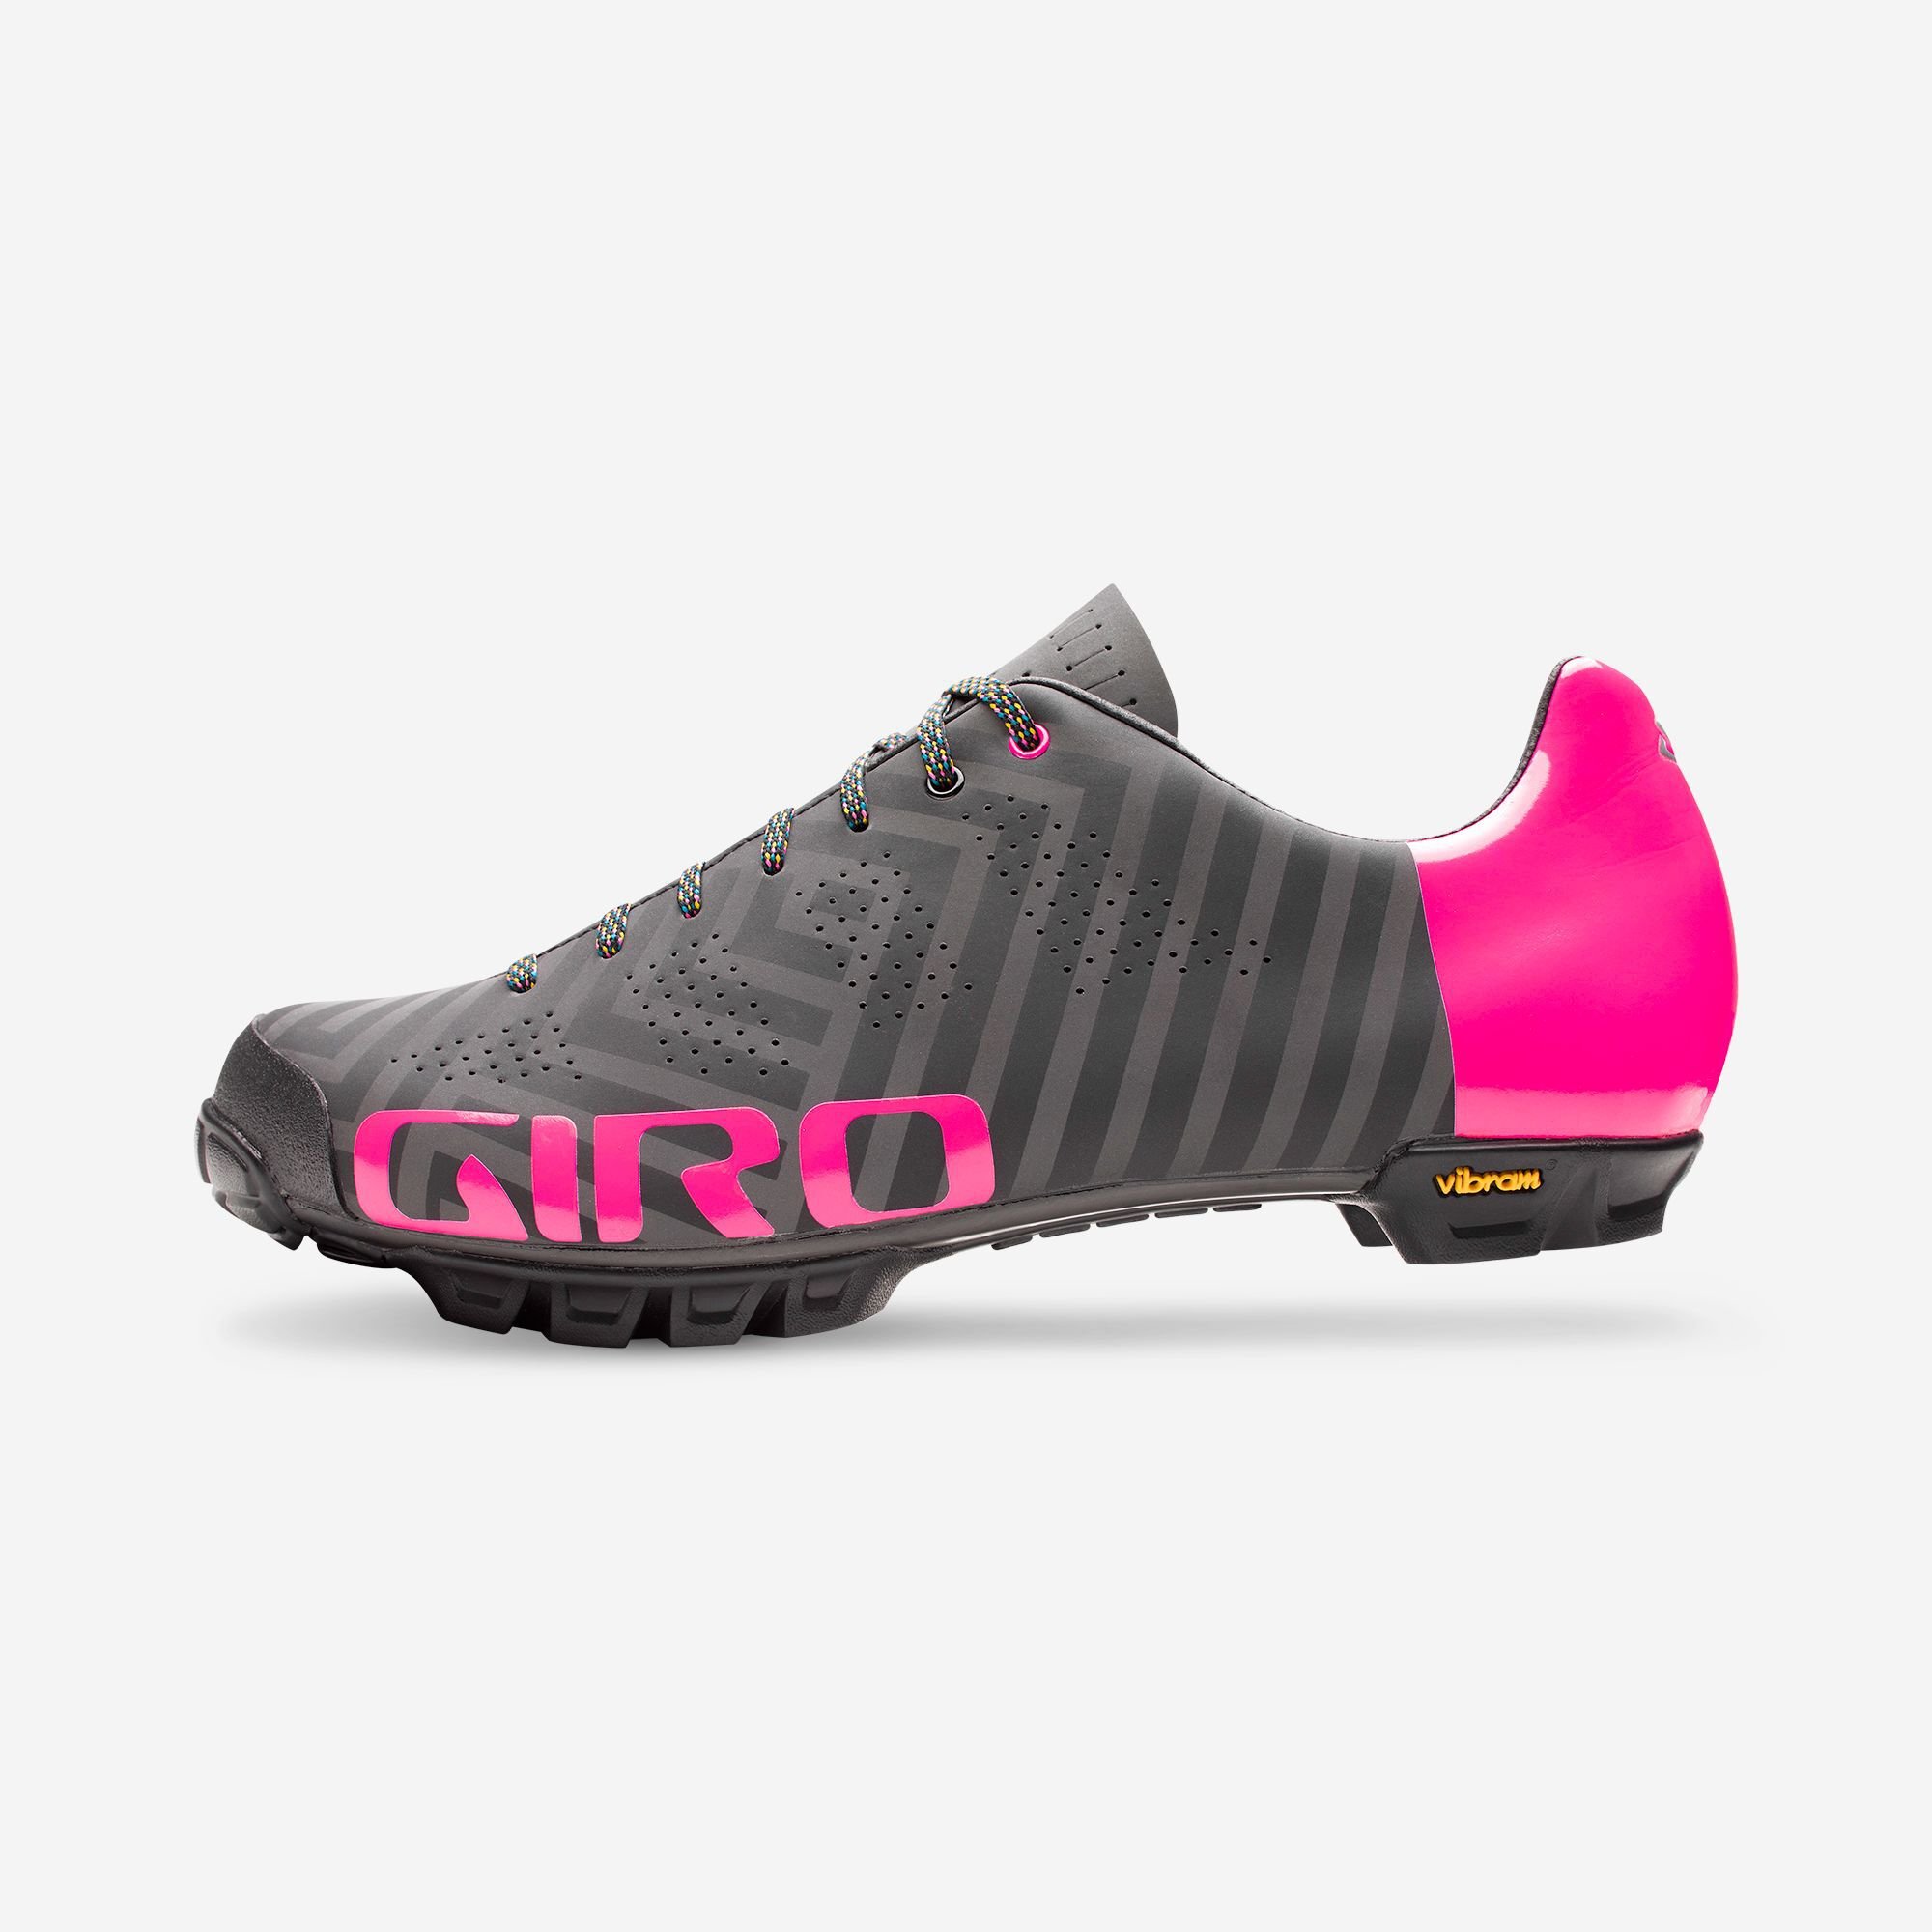 Giro Empire VR90 Women's Road Cycling Shoes 